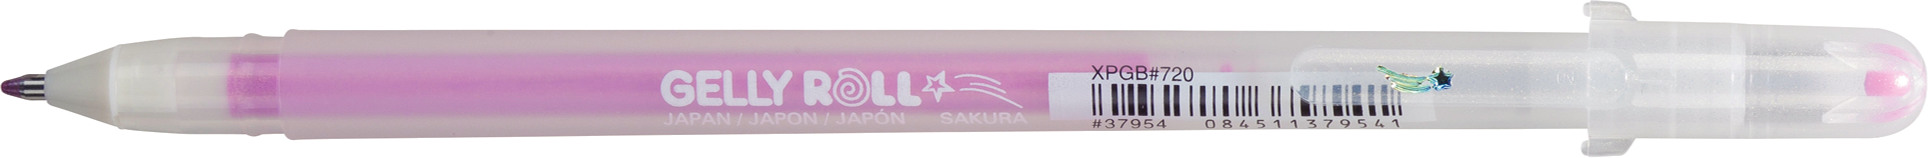 SAKURA Gelly Roll 0.5mm XPGB720 Stardust pink Glitter